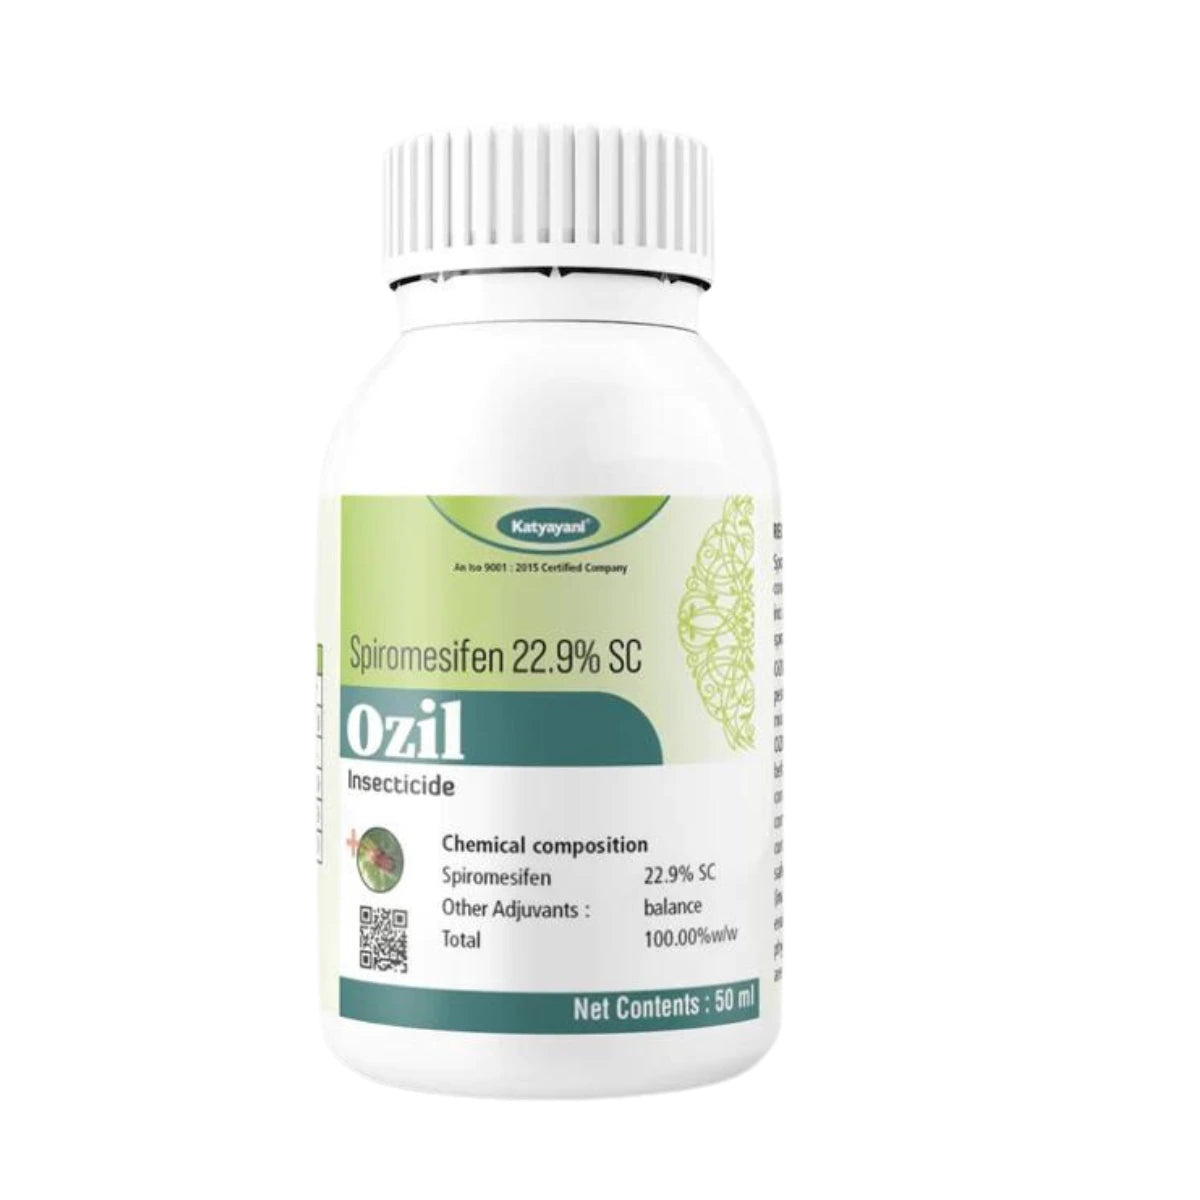 KATYAYANI OZIL (Spiromesifen 22.9% SC)